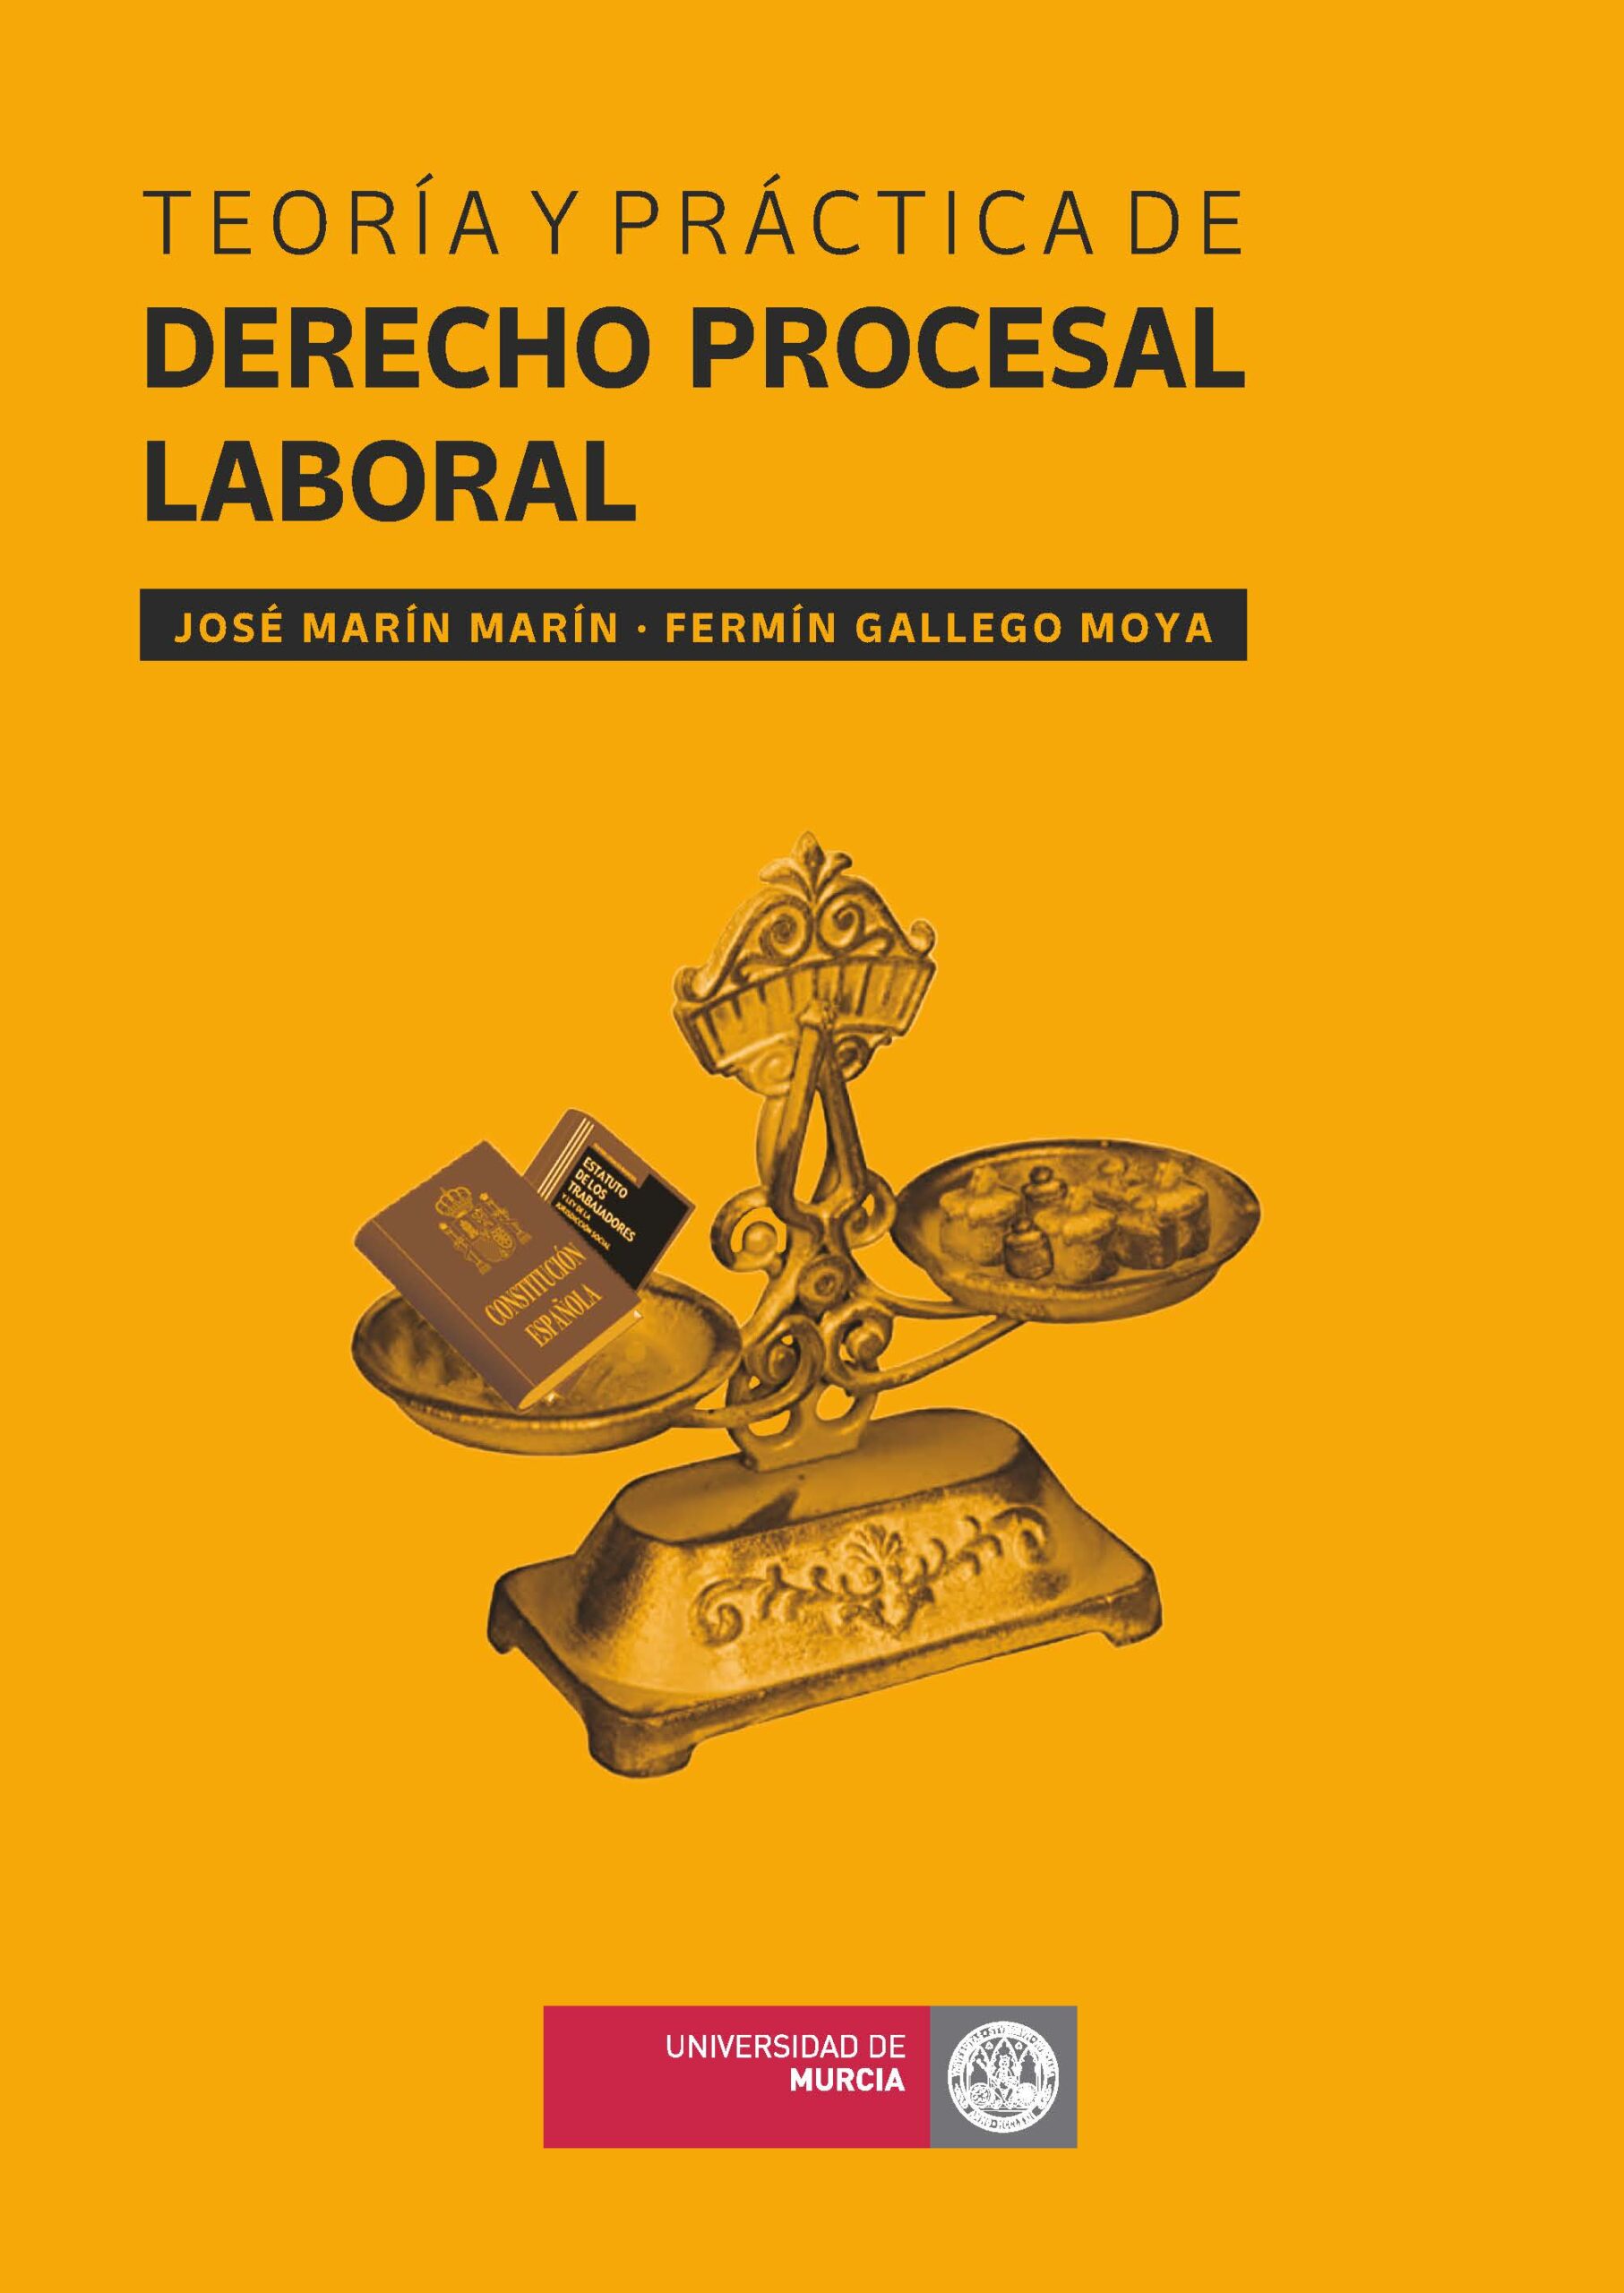 Este libro ofrece una visión global del Derecho Procesal Laboral, sintética y detallada. Los contenidos se exponen de forma esquemática pero desarrollada